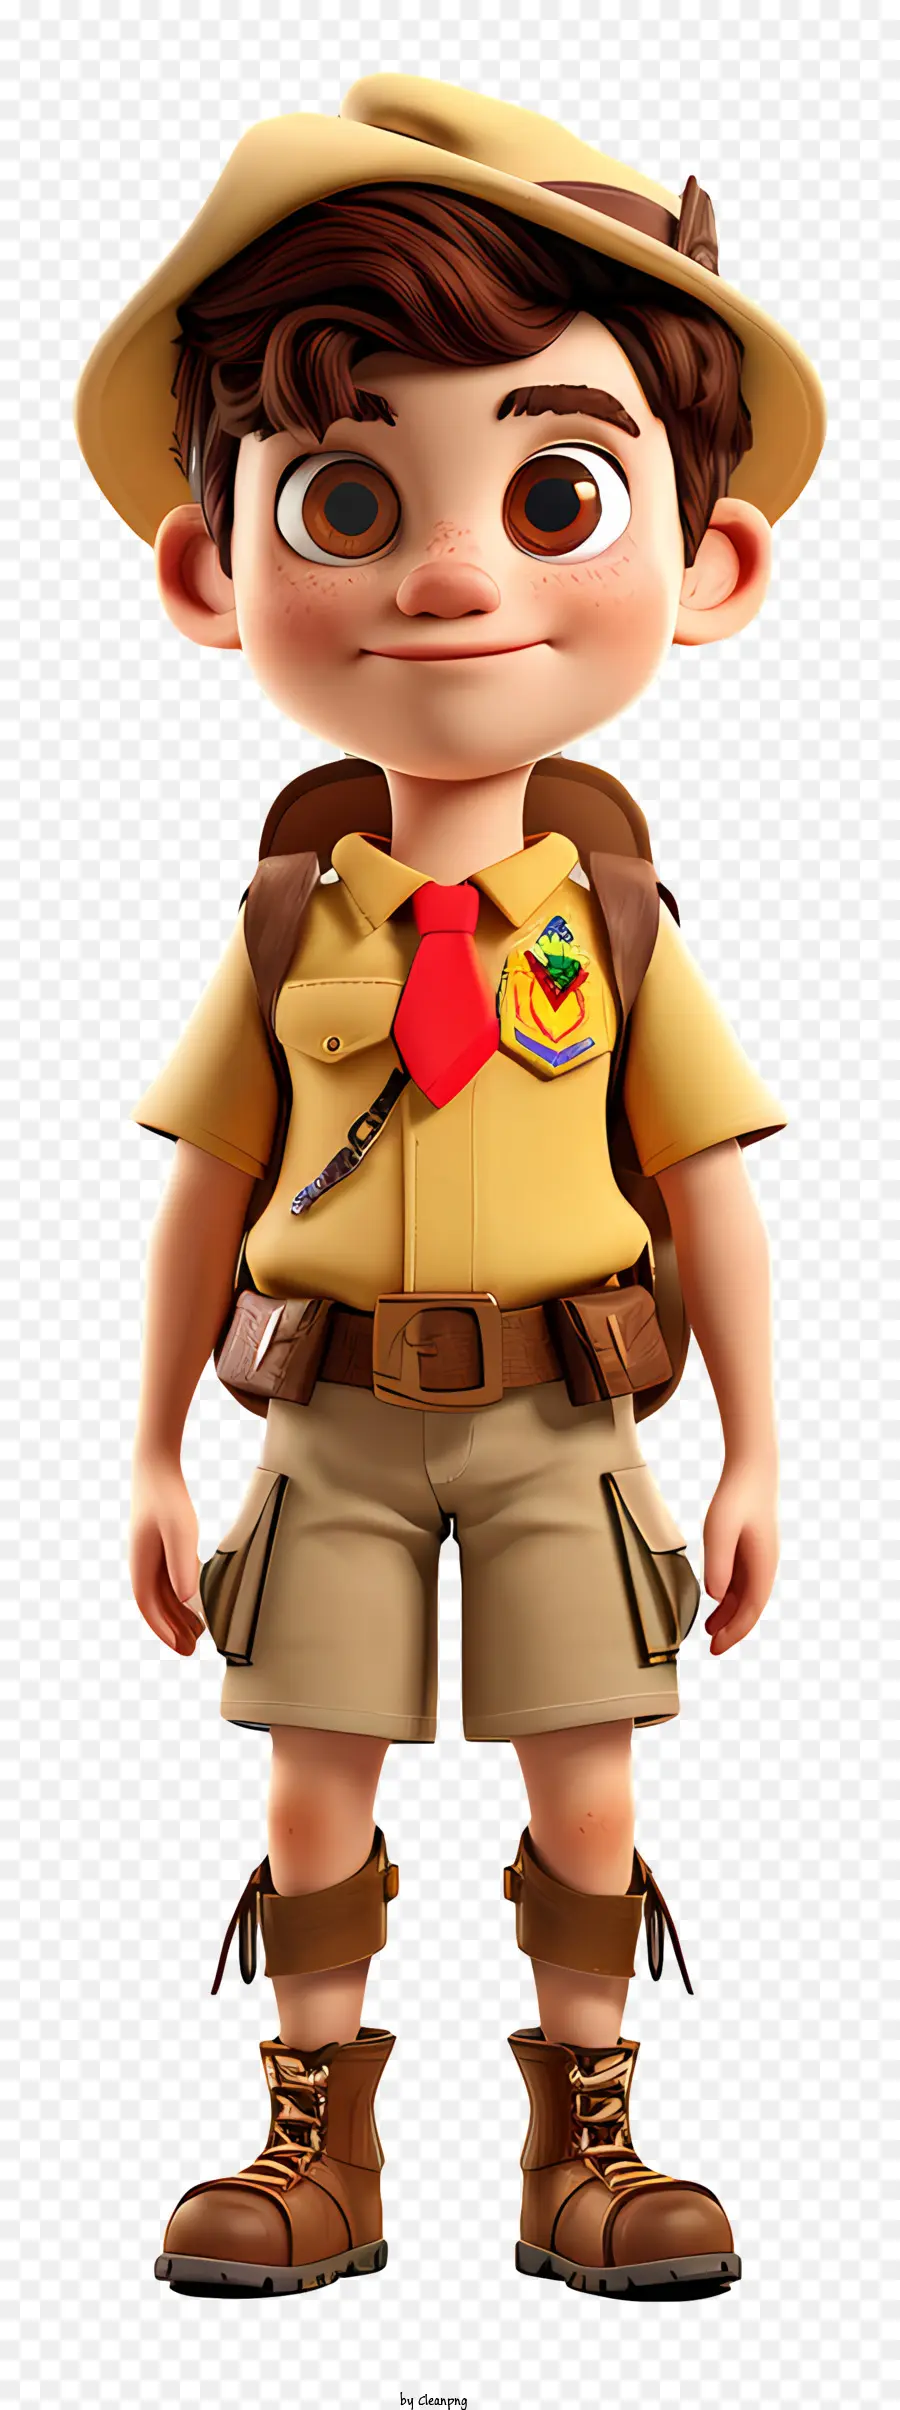 Boy Scout Boy Boy Yellow Shirt Short Boots Brown - Cậu bé cười với áo sơ mi màu vàng và mũ nâu